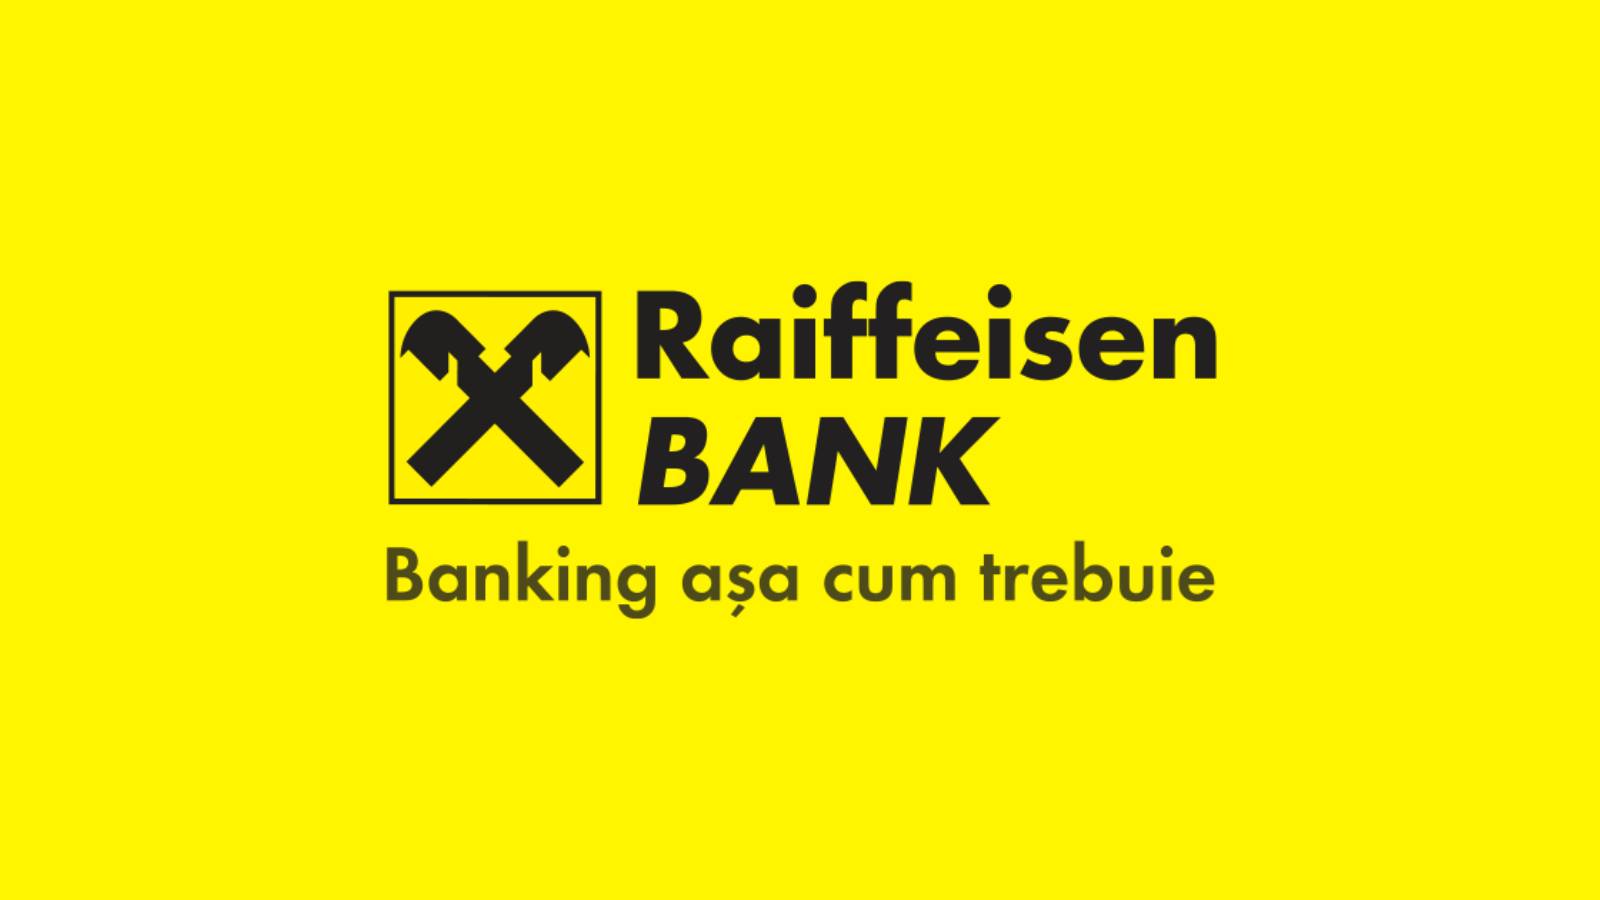 Raiffeisen Banks officielle beslutning GRATIS gør sommeren smukkere